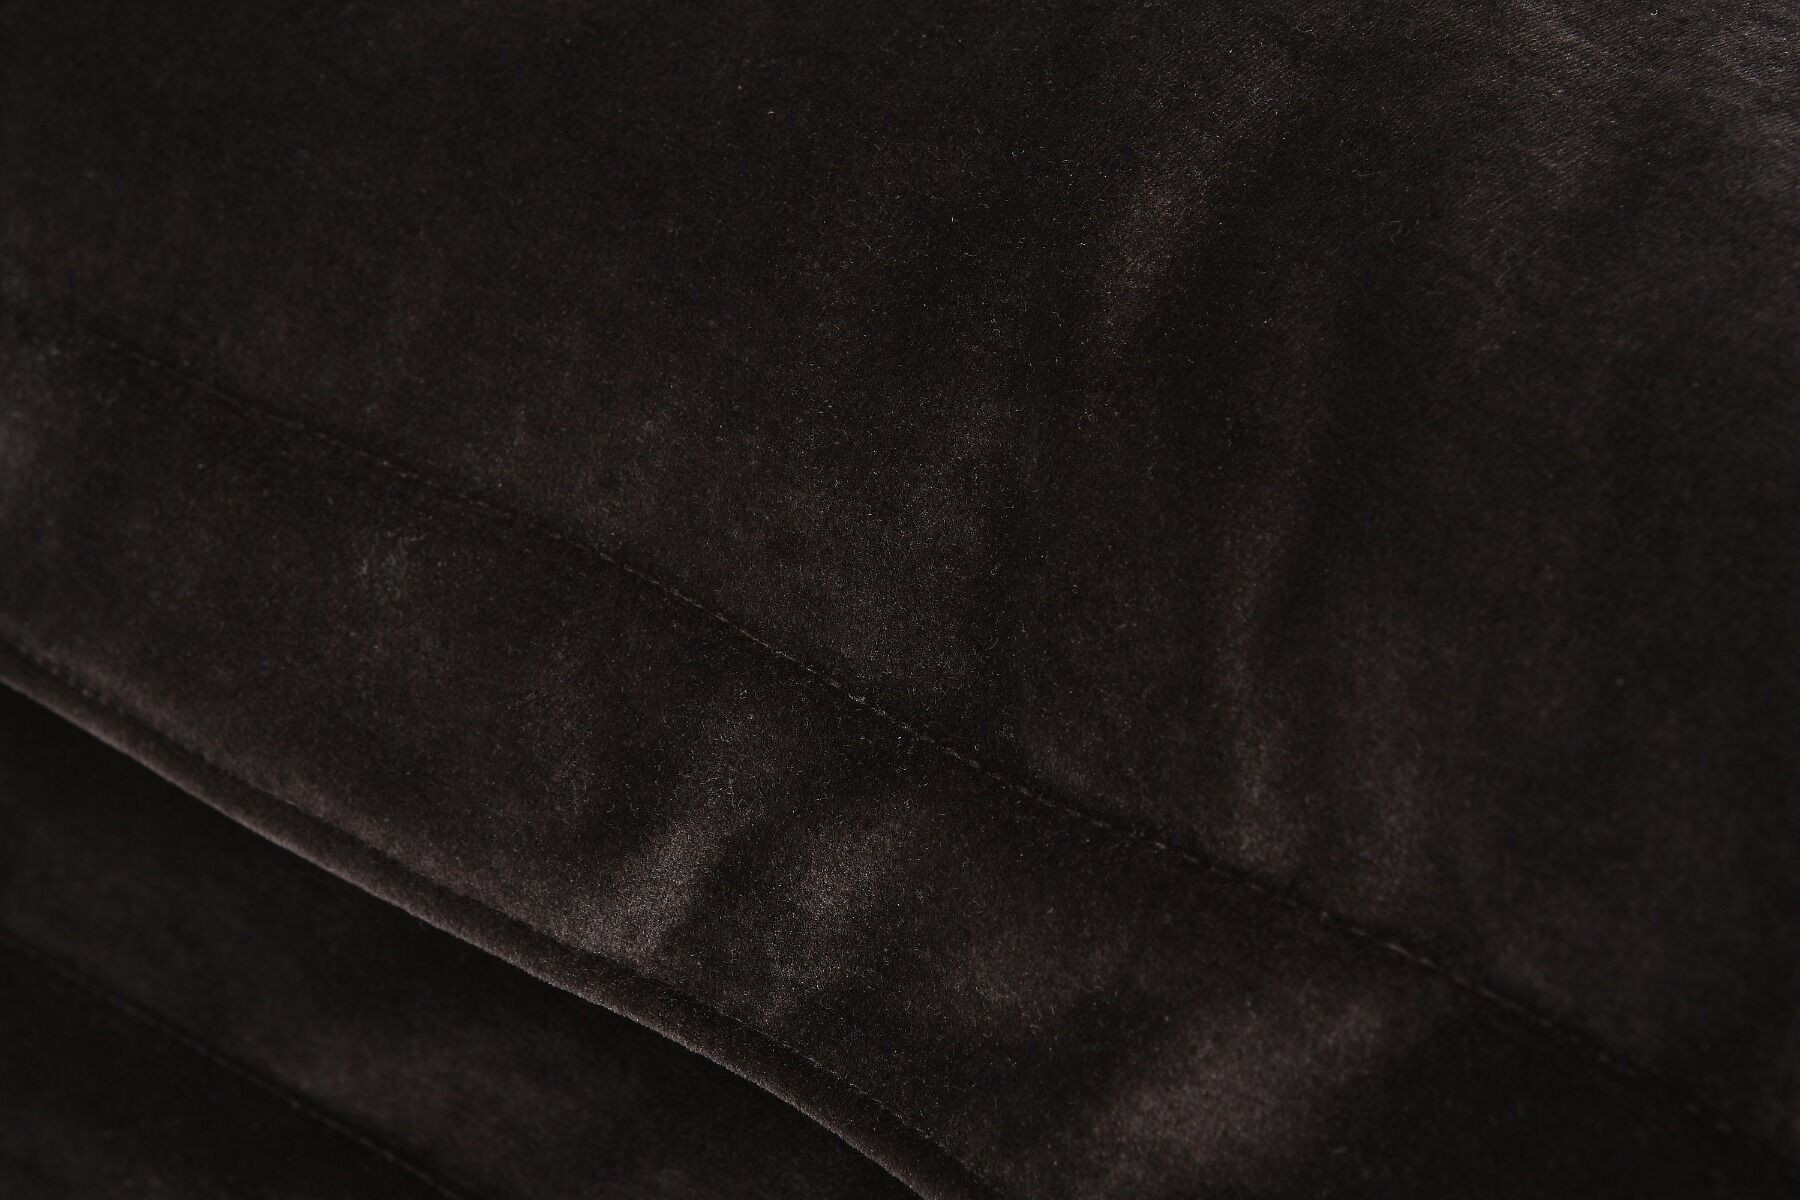 Sofa 4-osobowa z otomaną prawą Boa 320x160x75cm